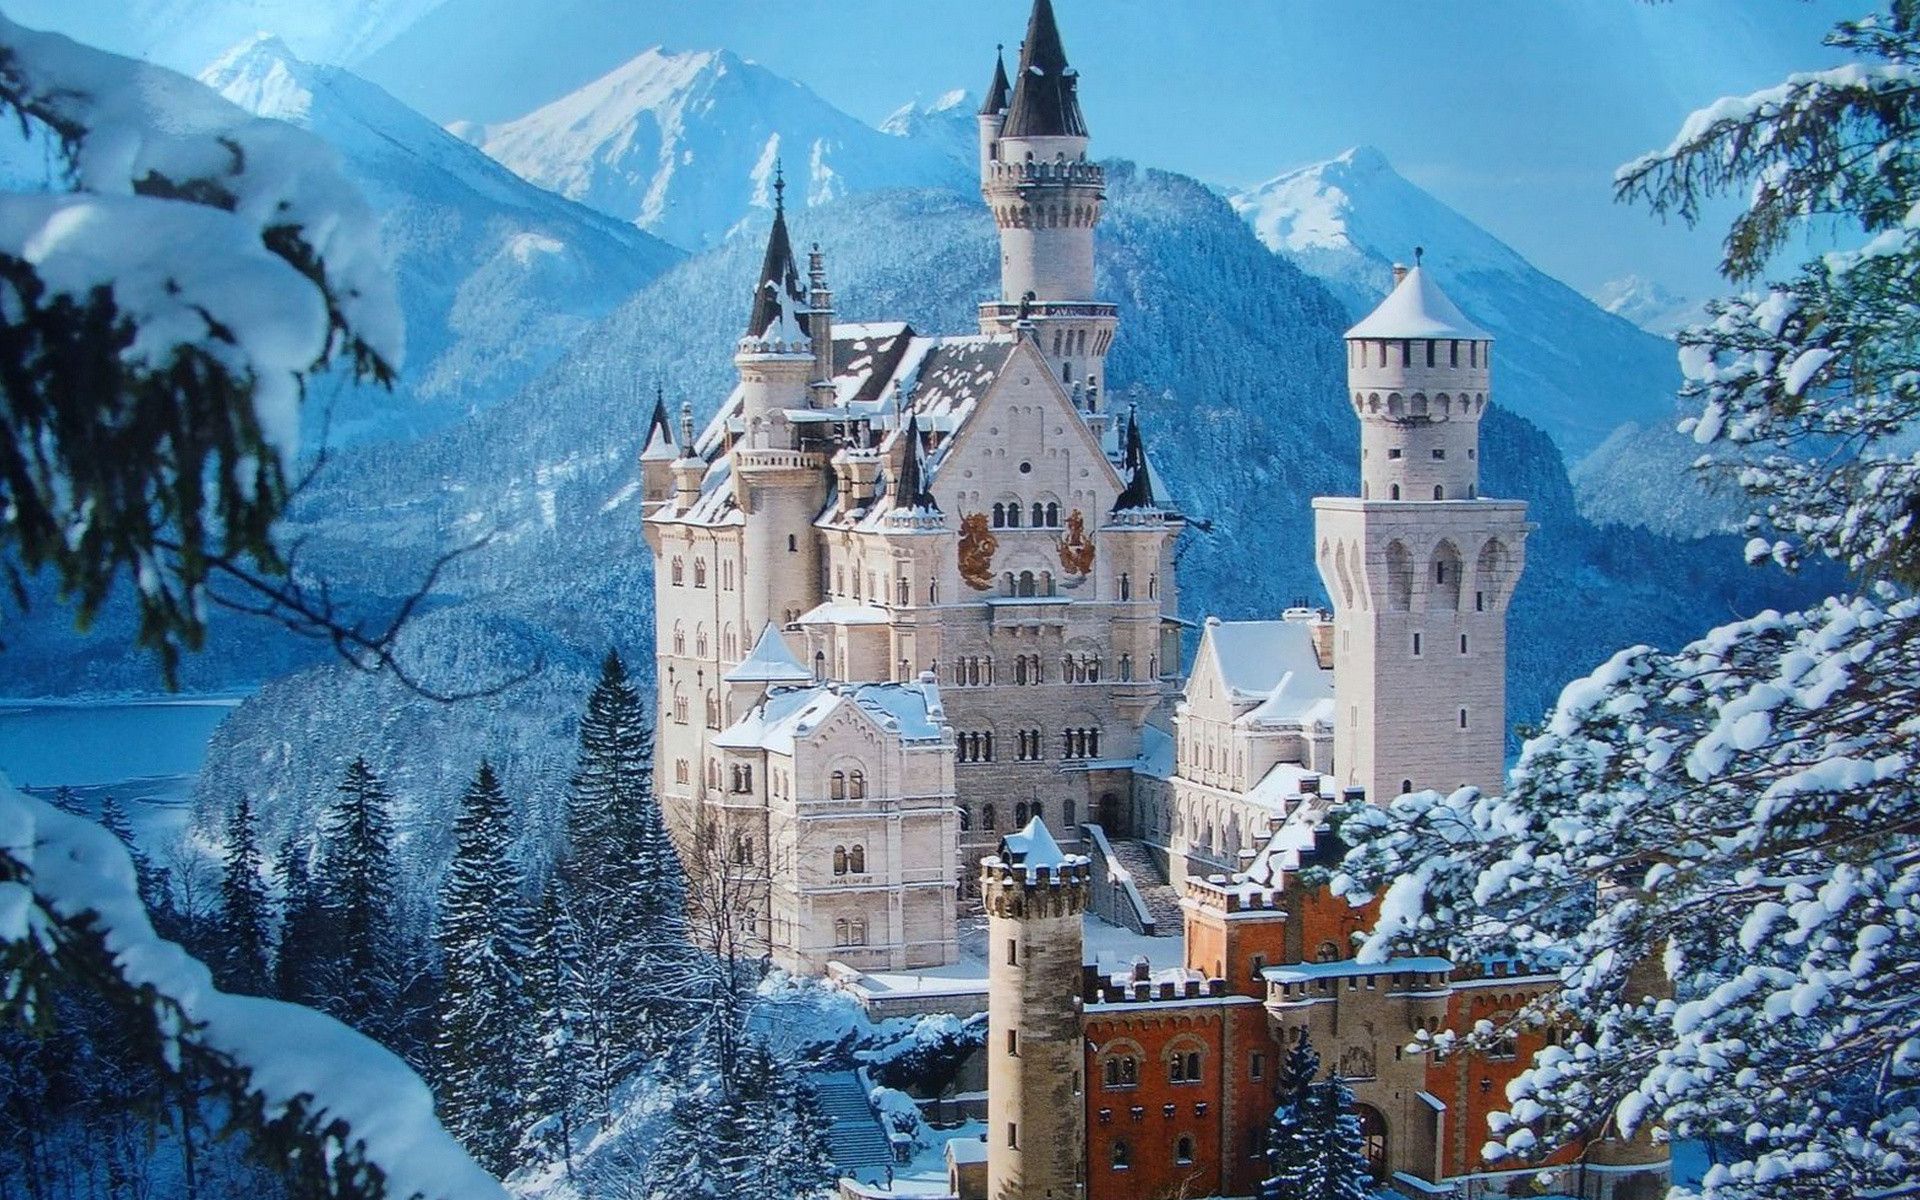 Il castello di Neuschwanstein: il maniero delle fiabe che ispirò Disney